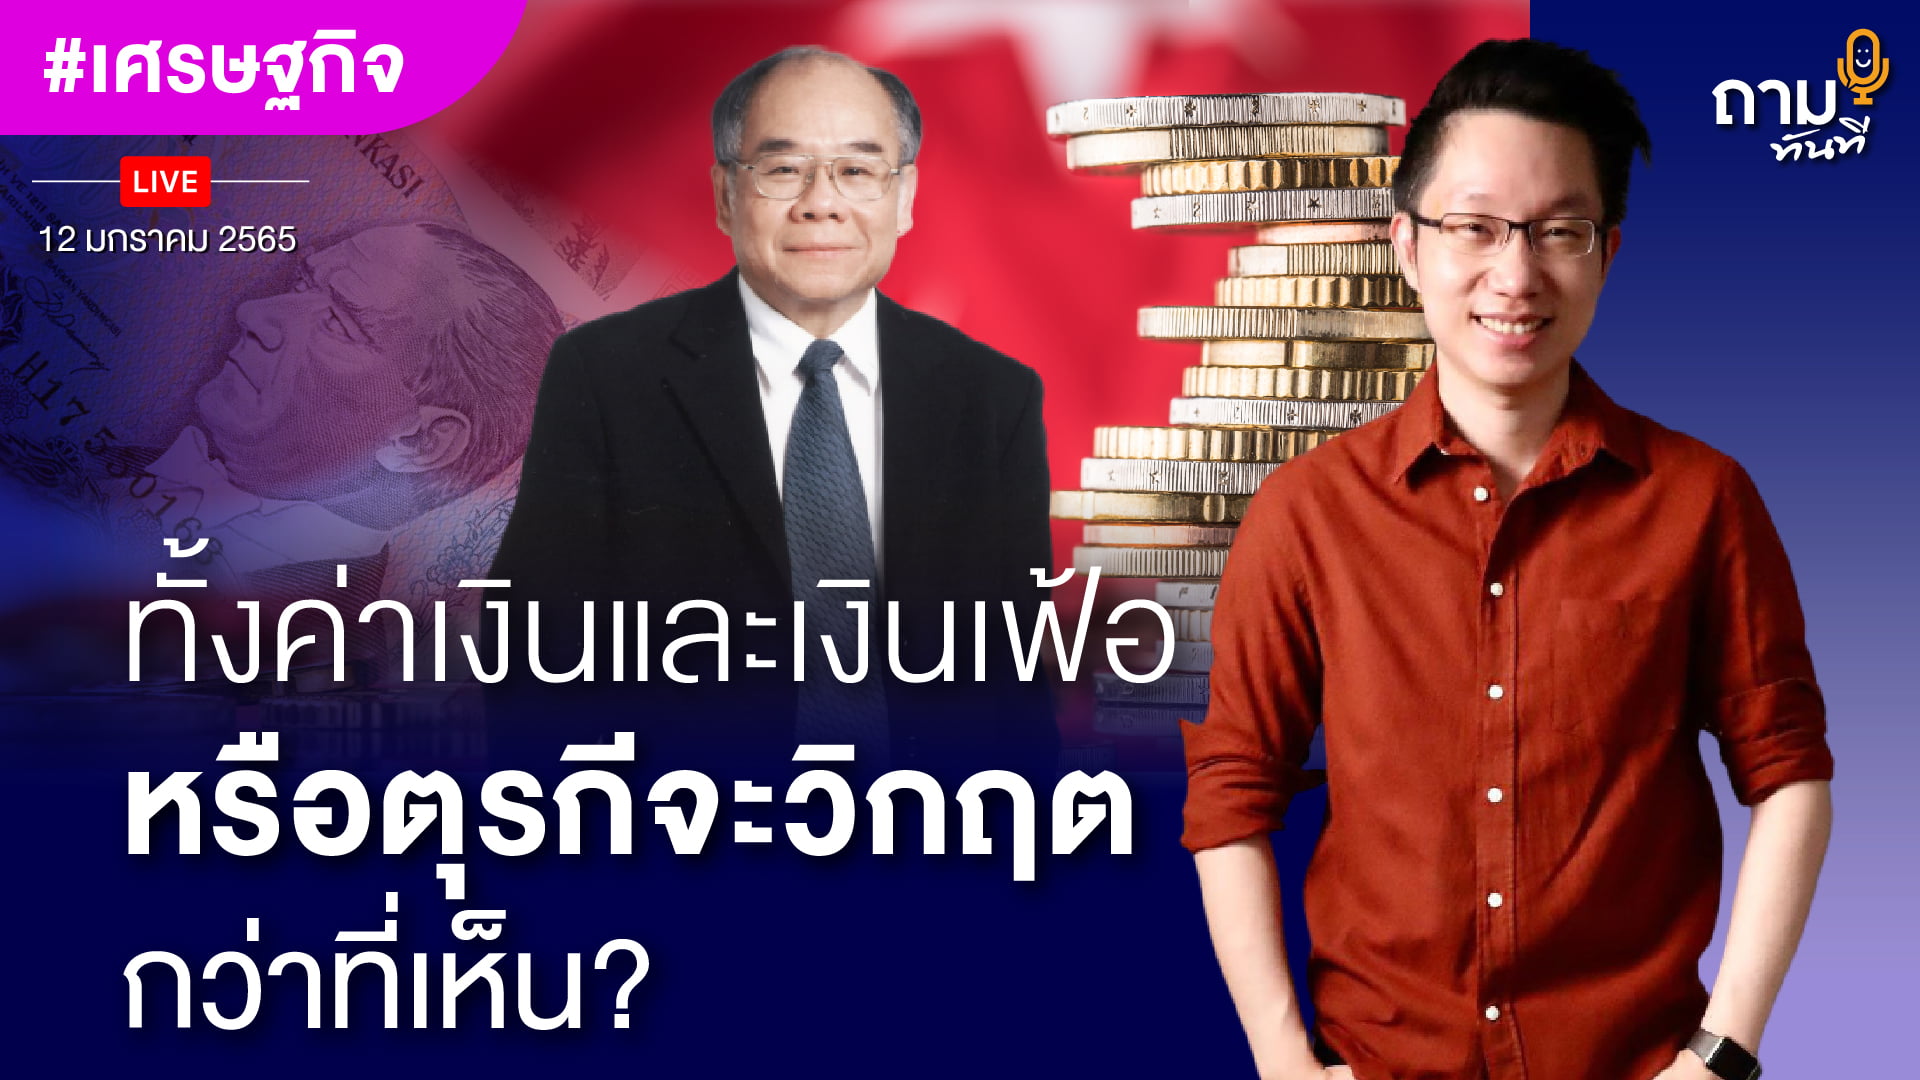 วิกฤตเงินเฟ้อและค่าเงินตุรกี วิกฤตกว่าที่เห็น? ถามอีก กับ ดร.สมชาย ภคภาสน์วิวัฒน์ ผู้เชี่ยวชาญด้านเศรษฐกิจและการเมืองระหว่างประเทศ